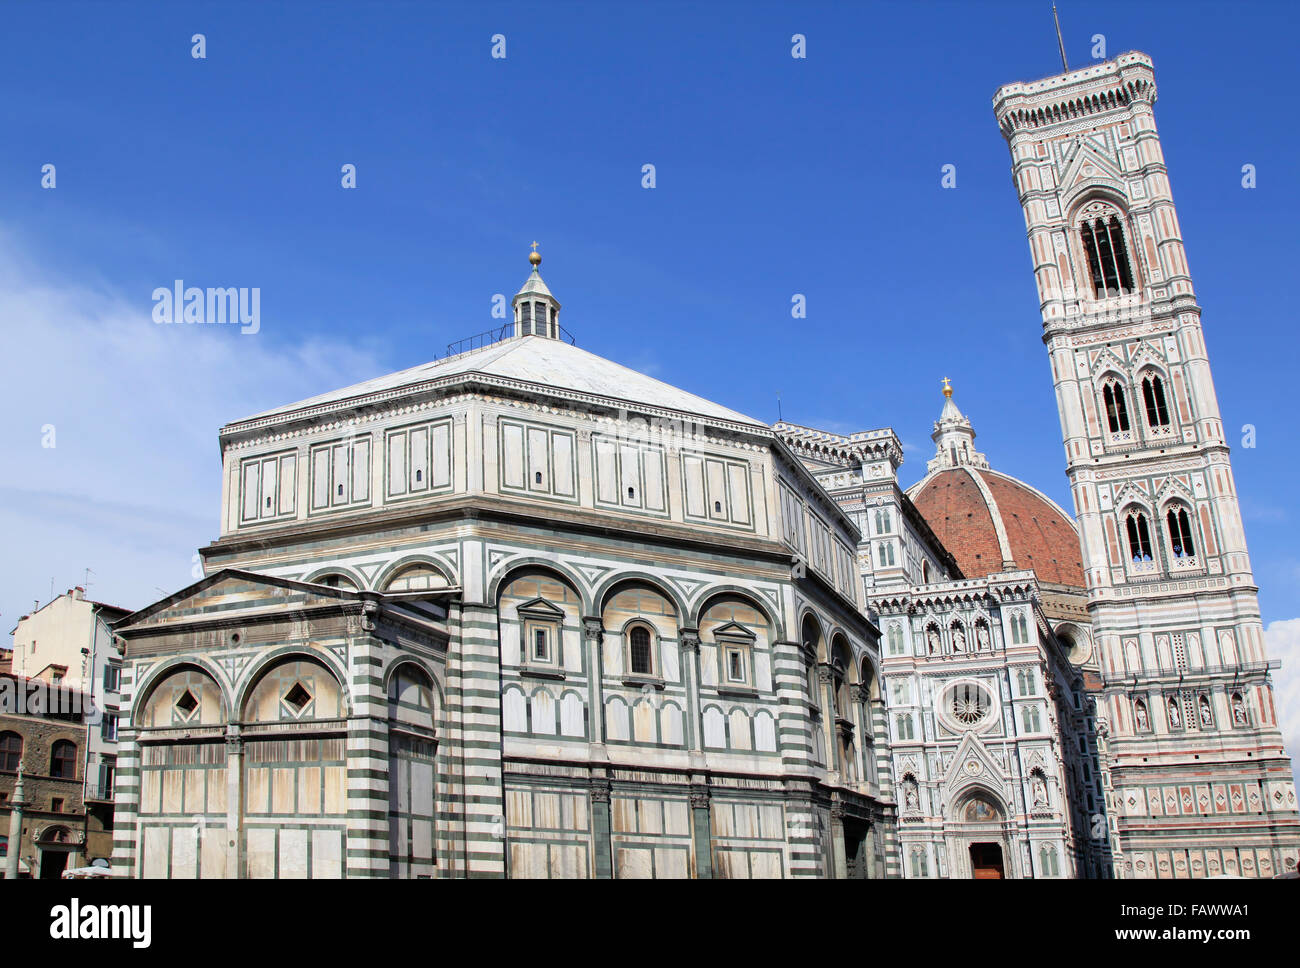 Santa Maria del Fiore Dome, Florence, Italy Stock Photo